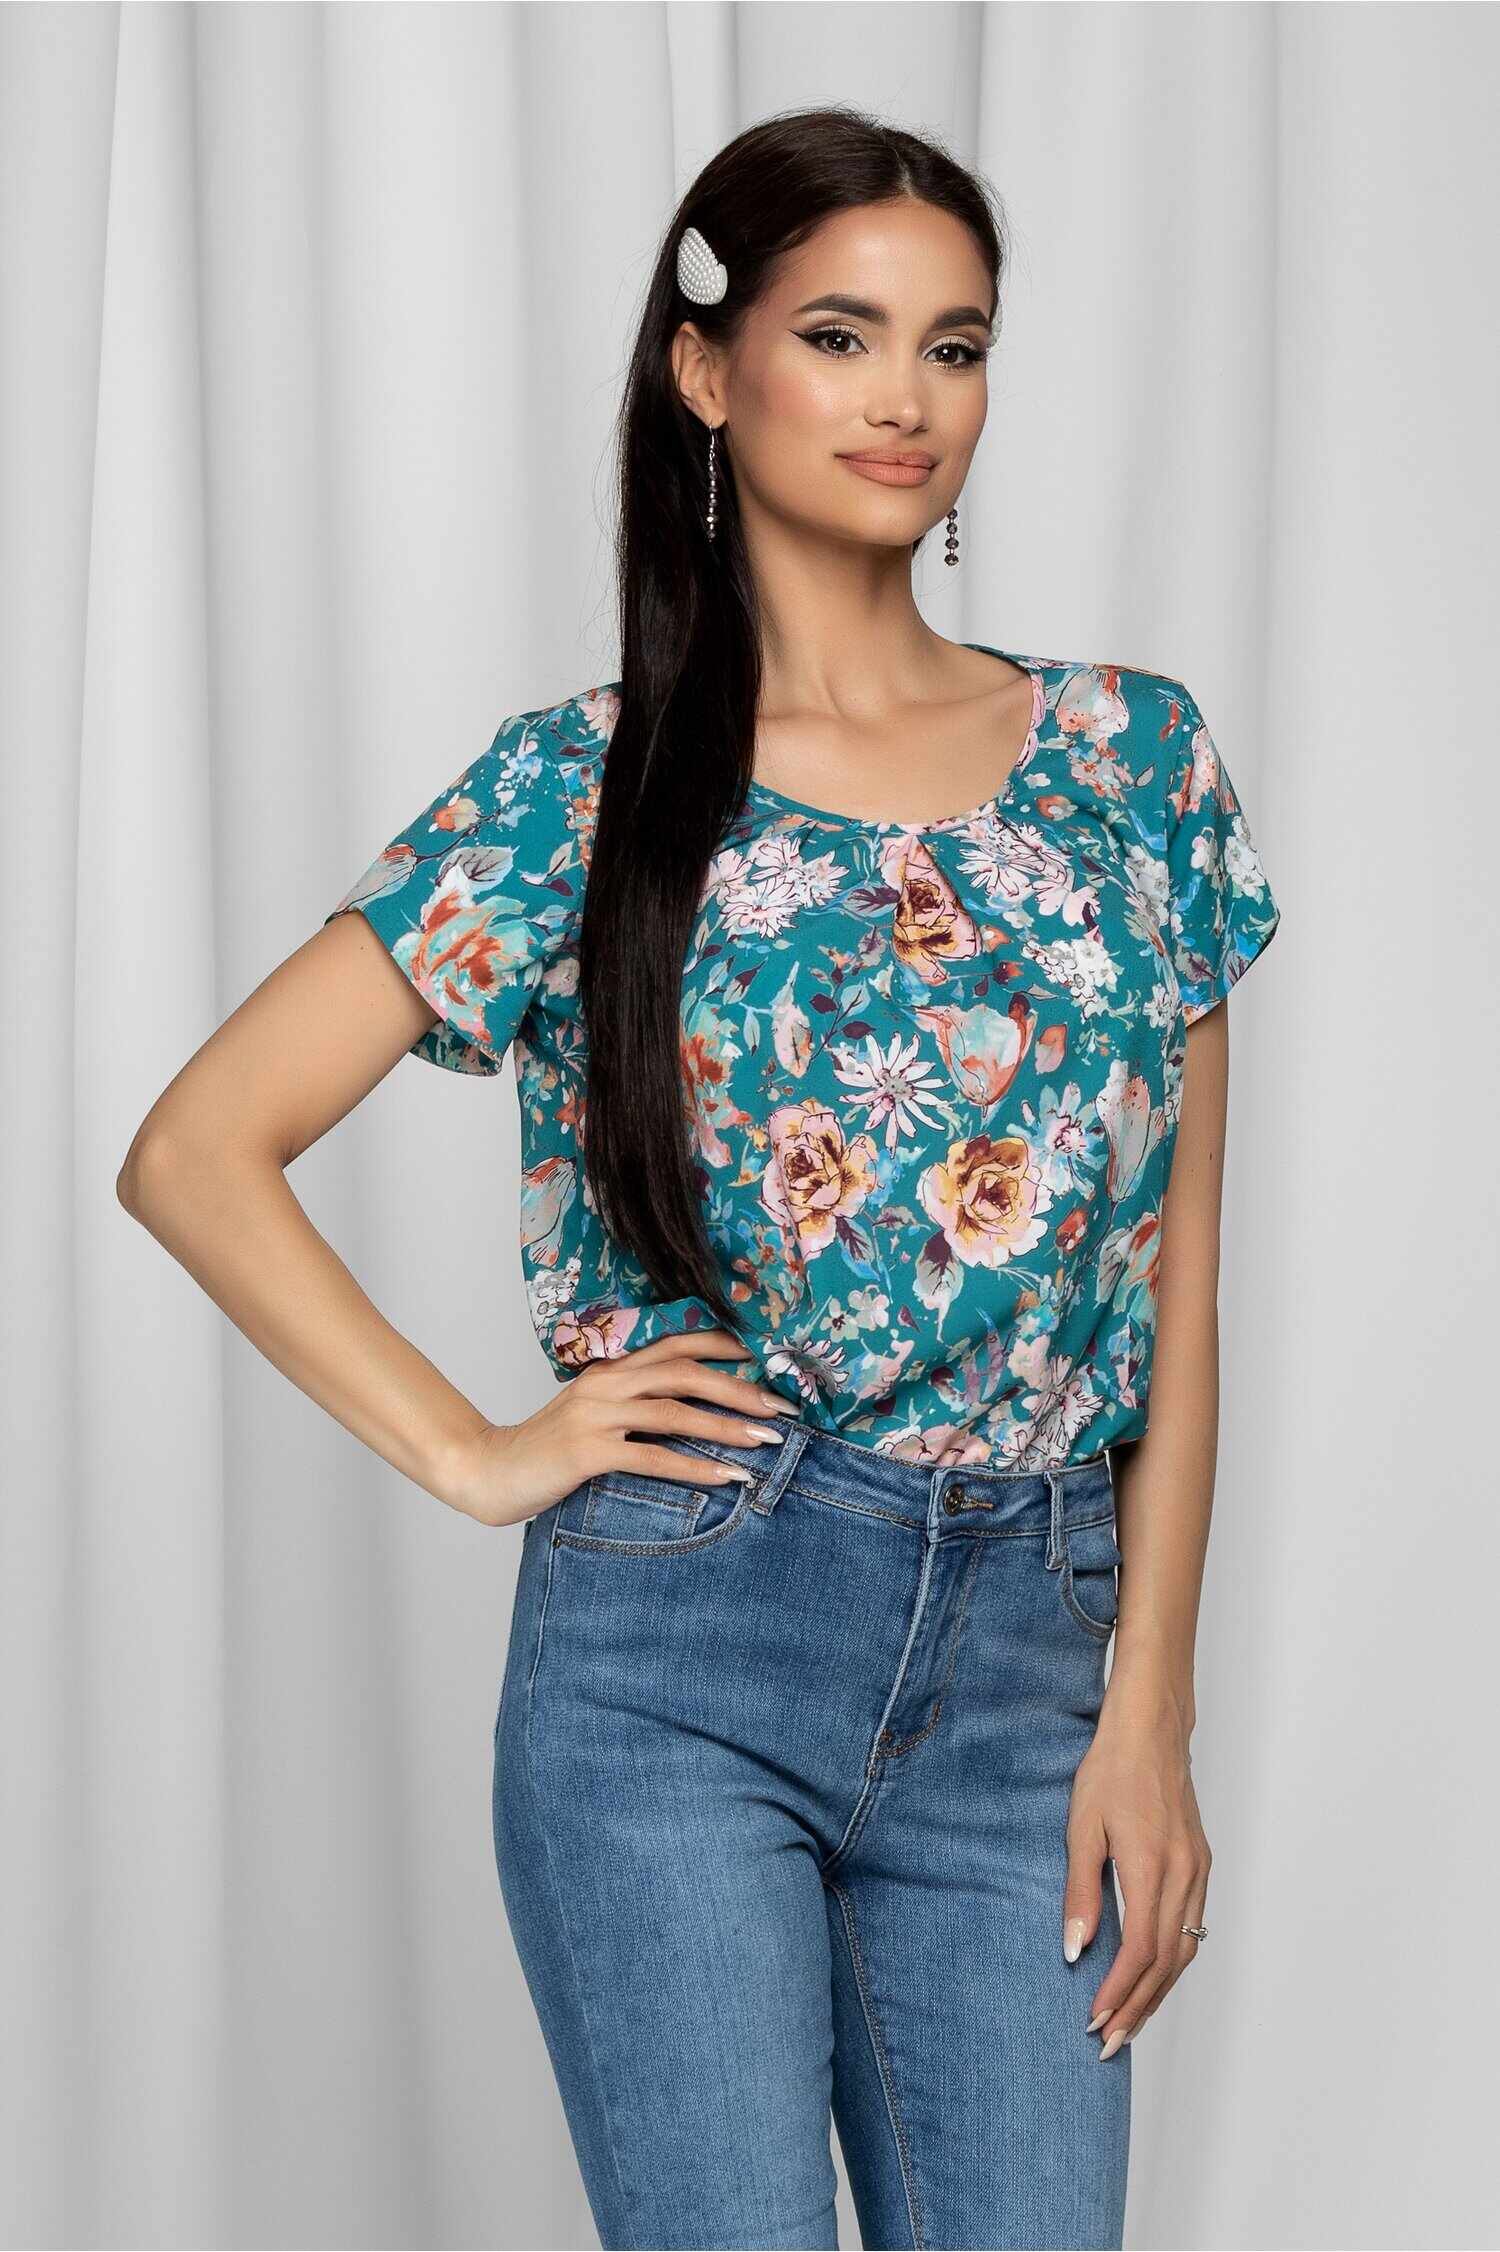 Bluza LaDonna turcoaz cu imprimeu floral si design cu pliuri la bust